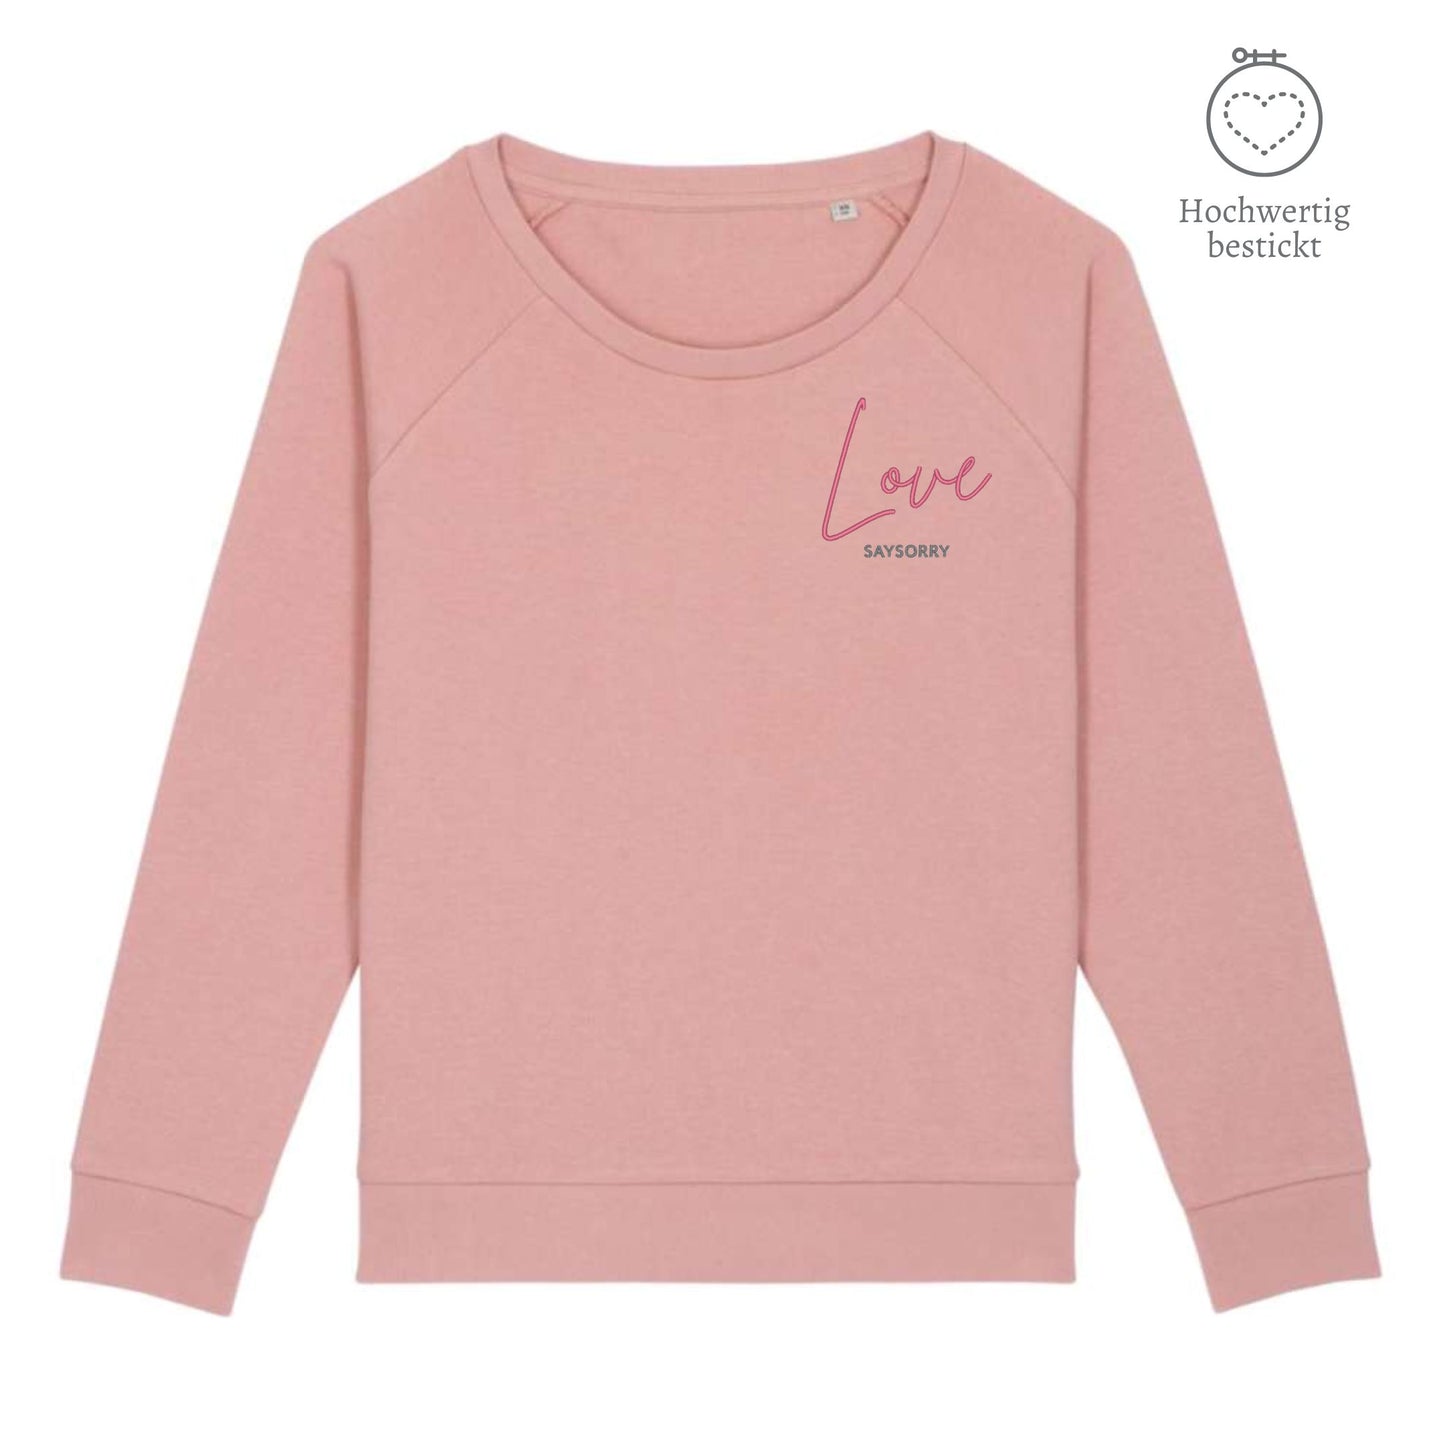 Organic Sweatshirt mit weitem Rundhals-Ausschnitt »Love« hochwertig bestickt Shirt SAYSORRY Canyon Pink XS 